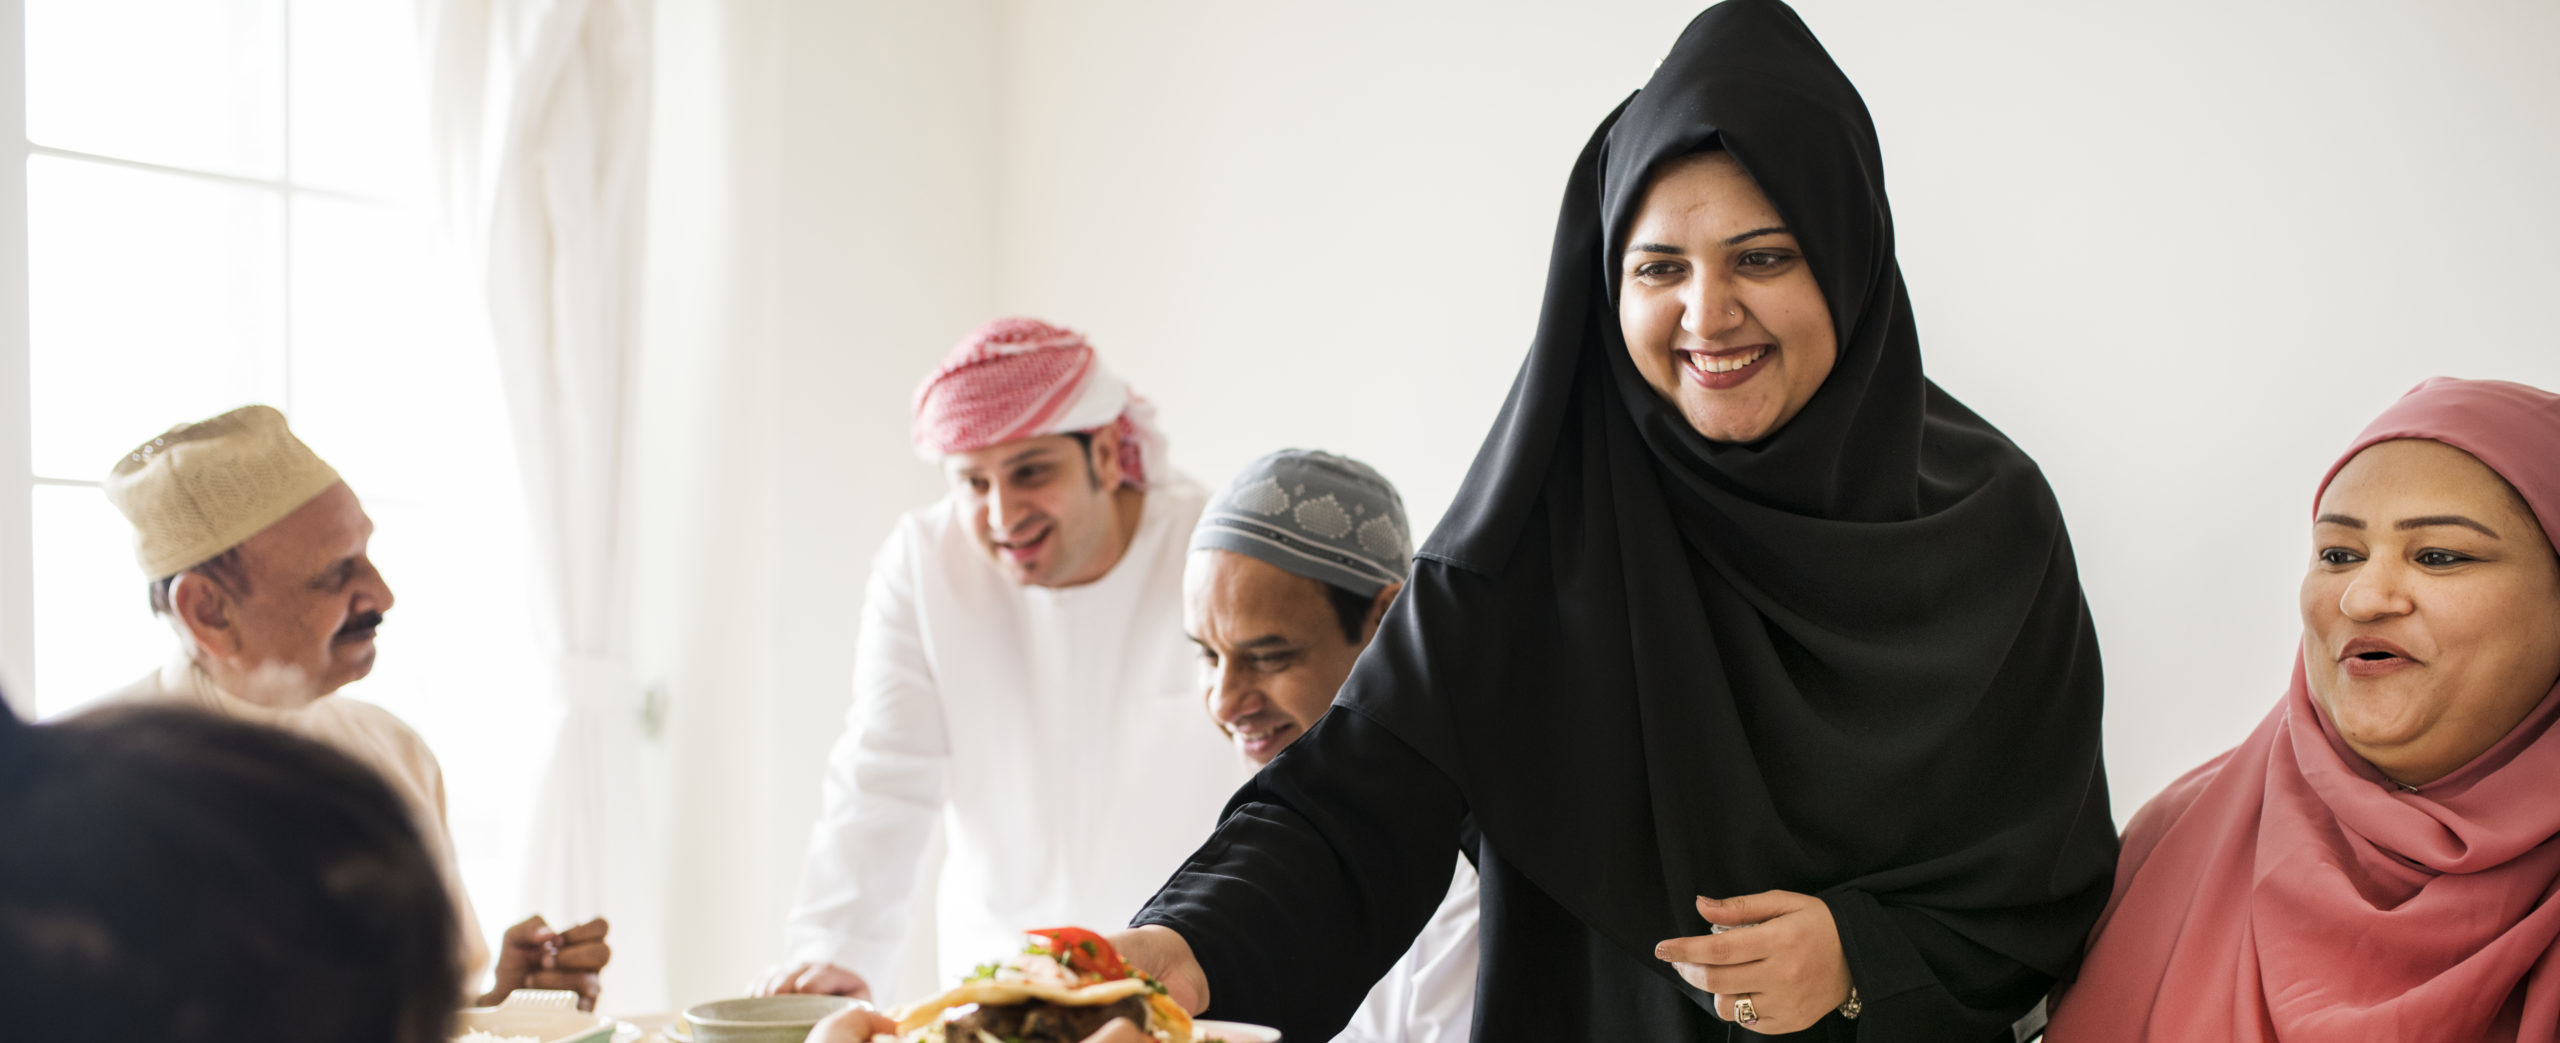 Muslim woman sharing food at Ramadan feast